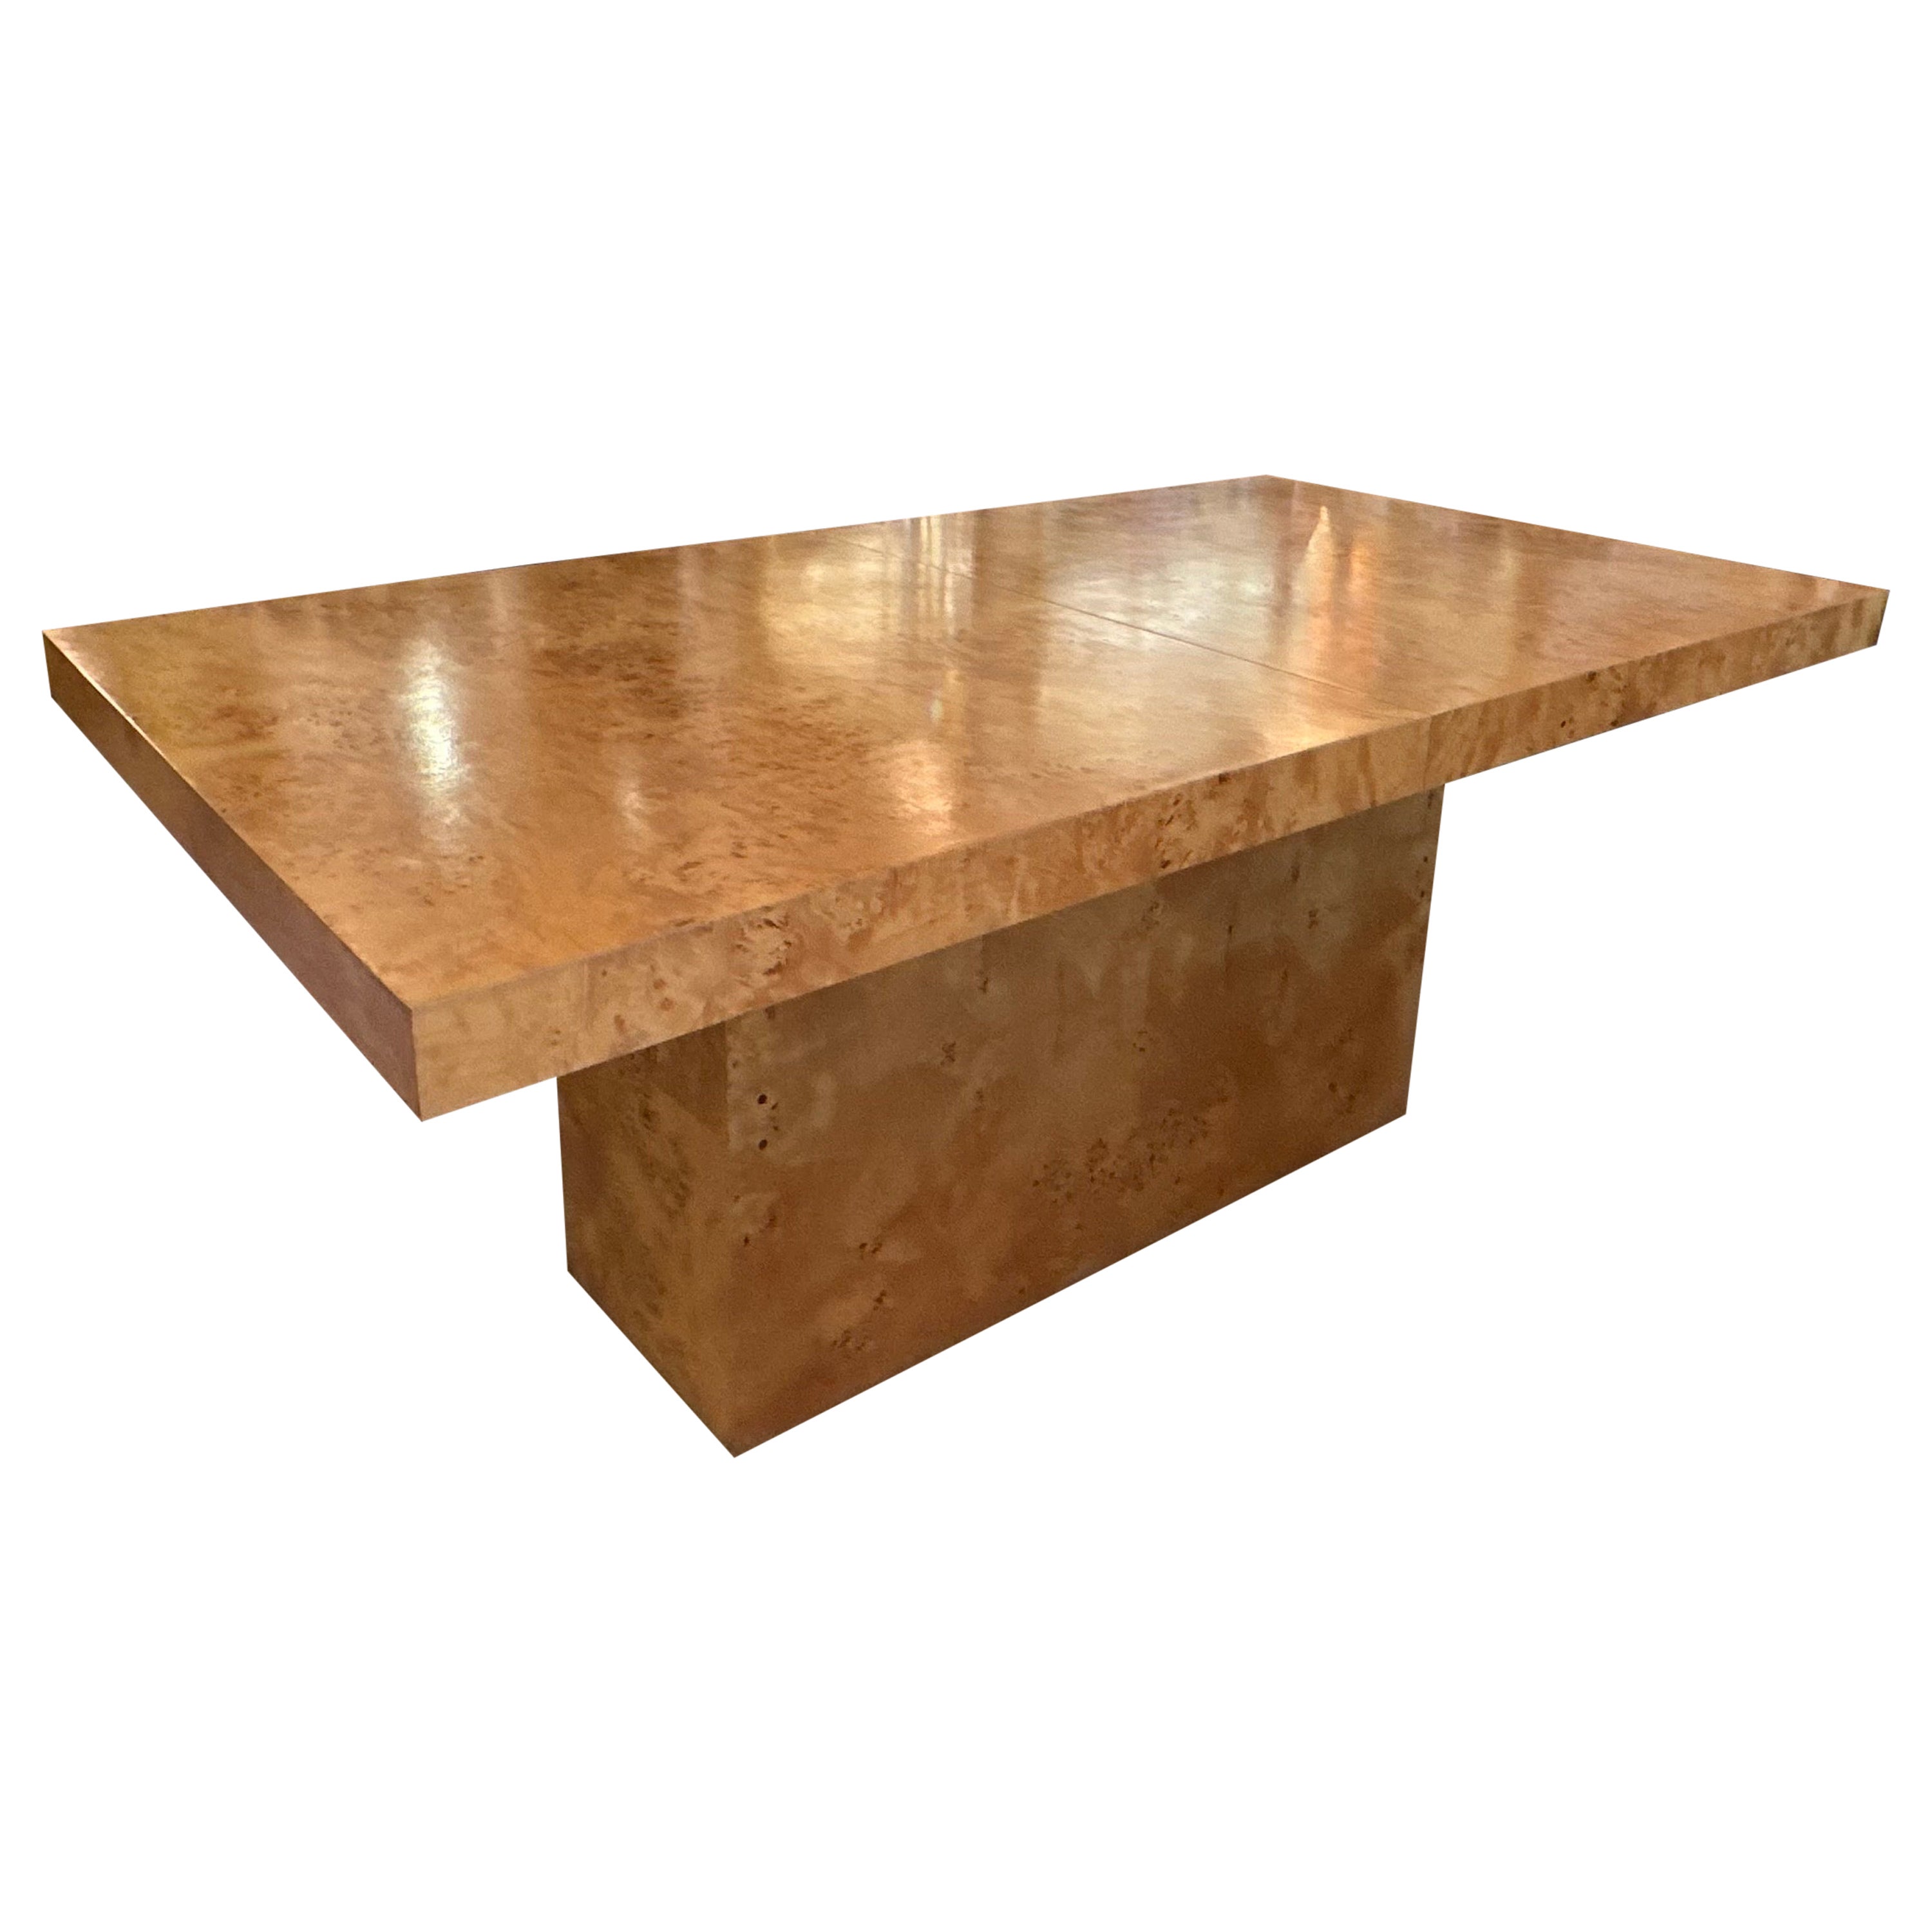 Vintage Arthur Umanoff Burl Burled Wood Dining Table 2 Leaves Pedestal Olivewood